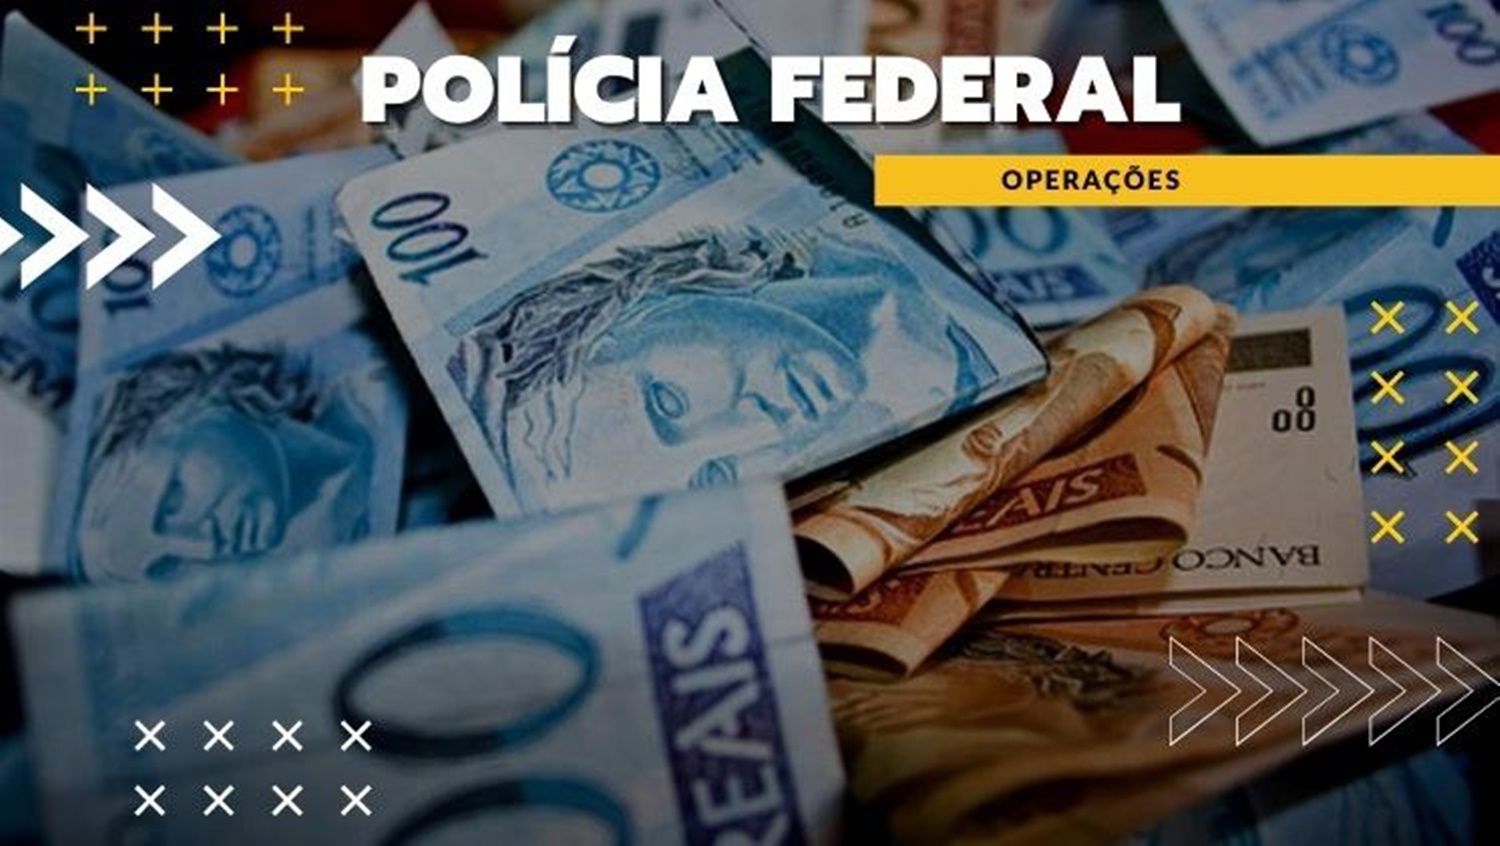 SEIS ESTADOS: PF desarticula organização criminosa que lavou 4 bilhões de reais